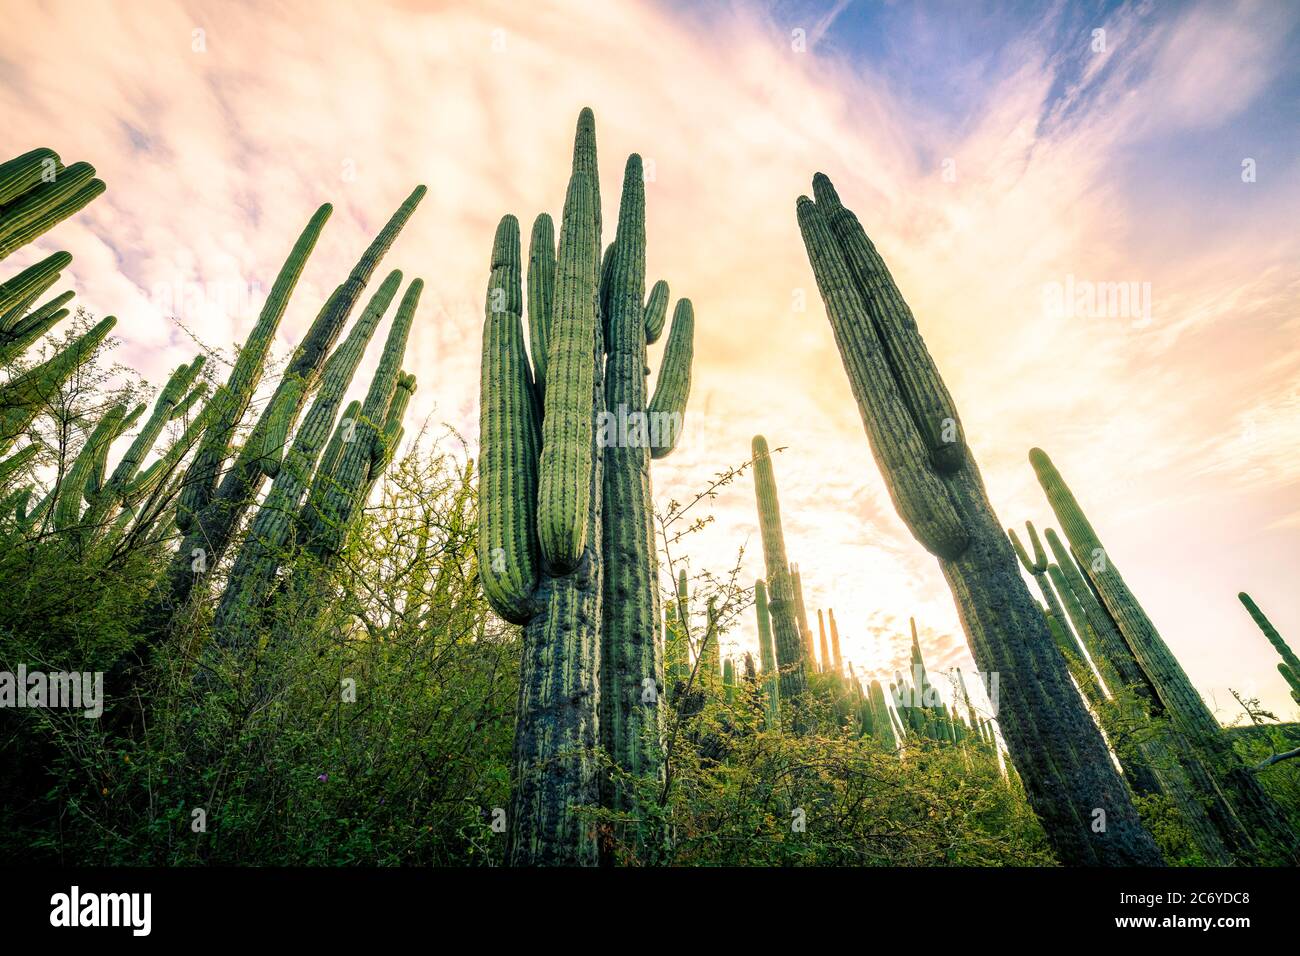 Paysage de cactus dans la réserve Tehuacan-Cuicatlan à Puebla, au Mexique. Banque D'Images